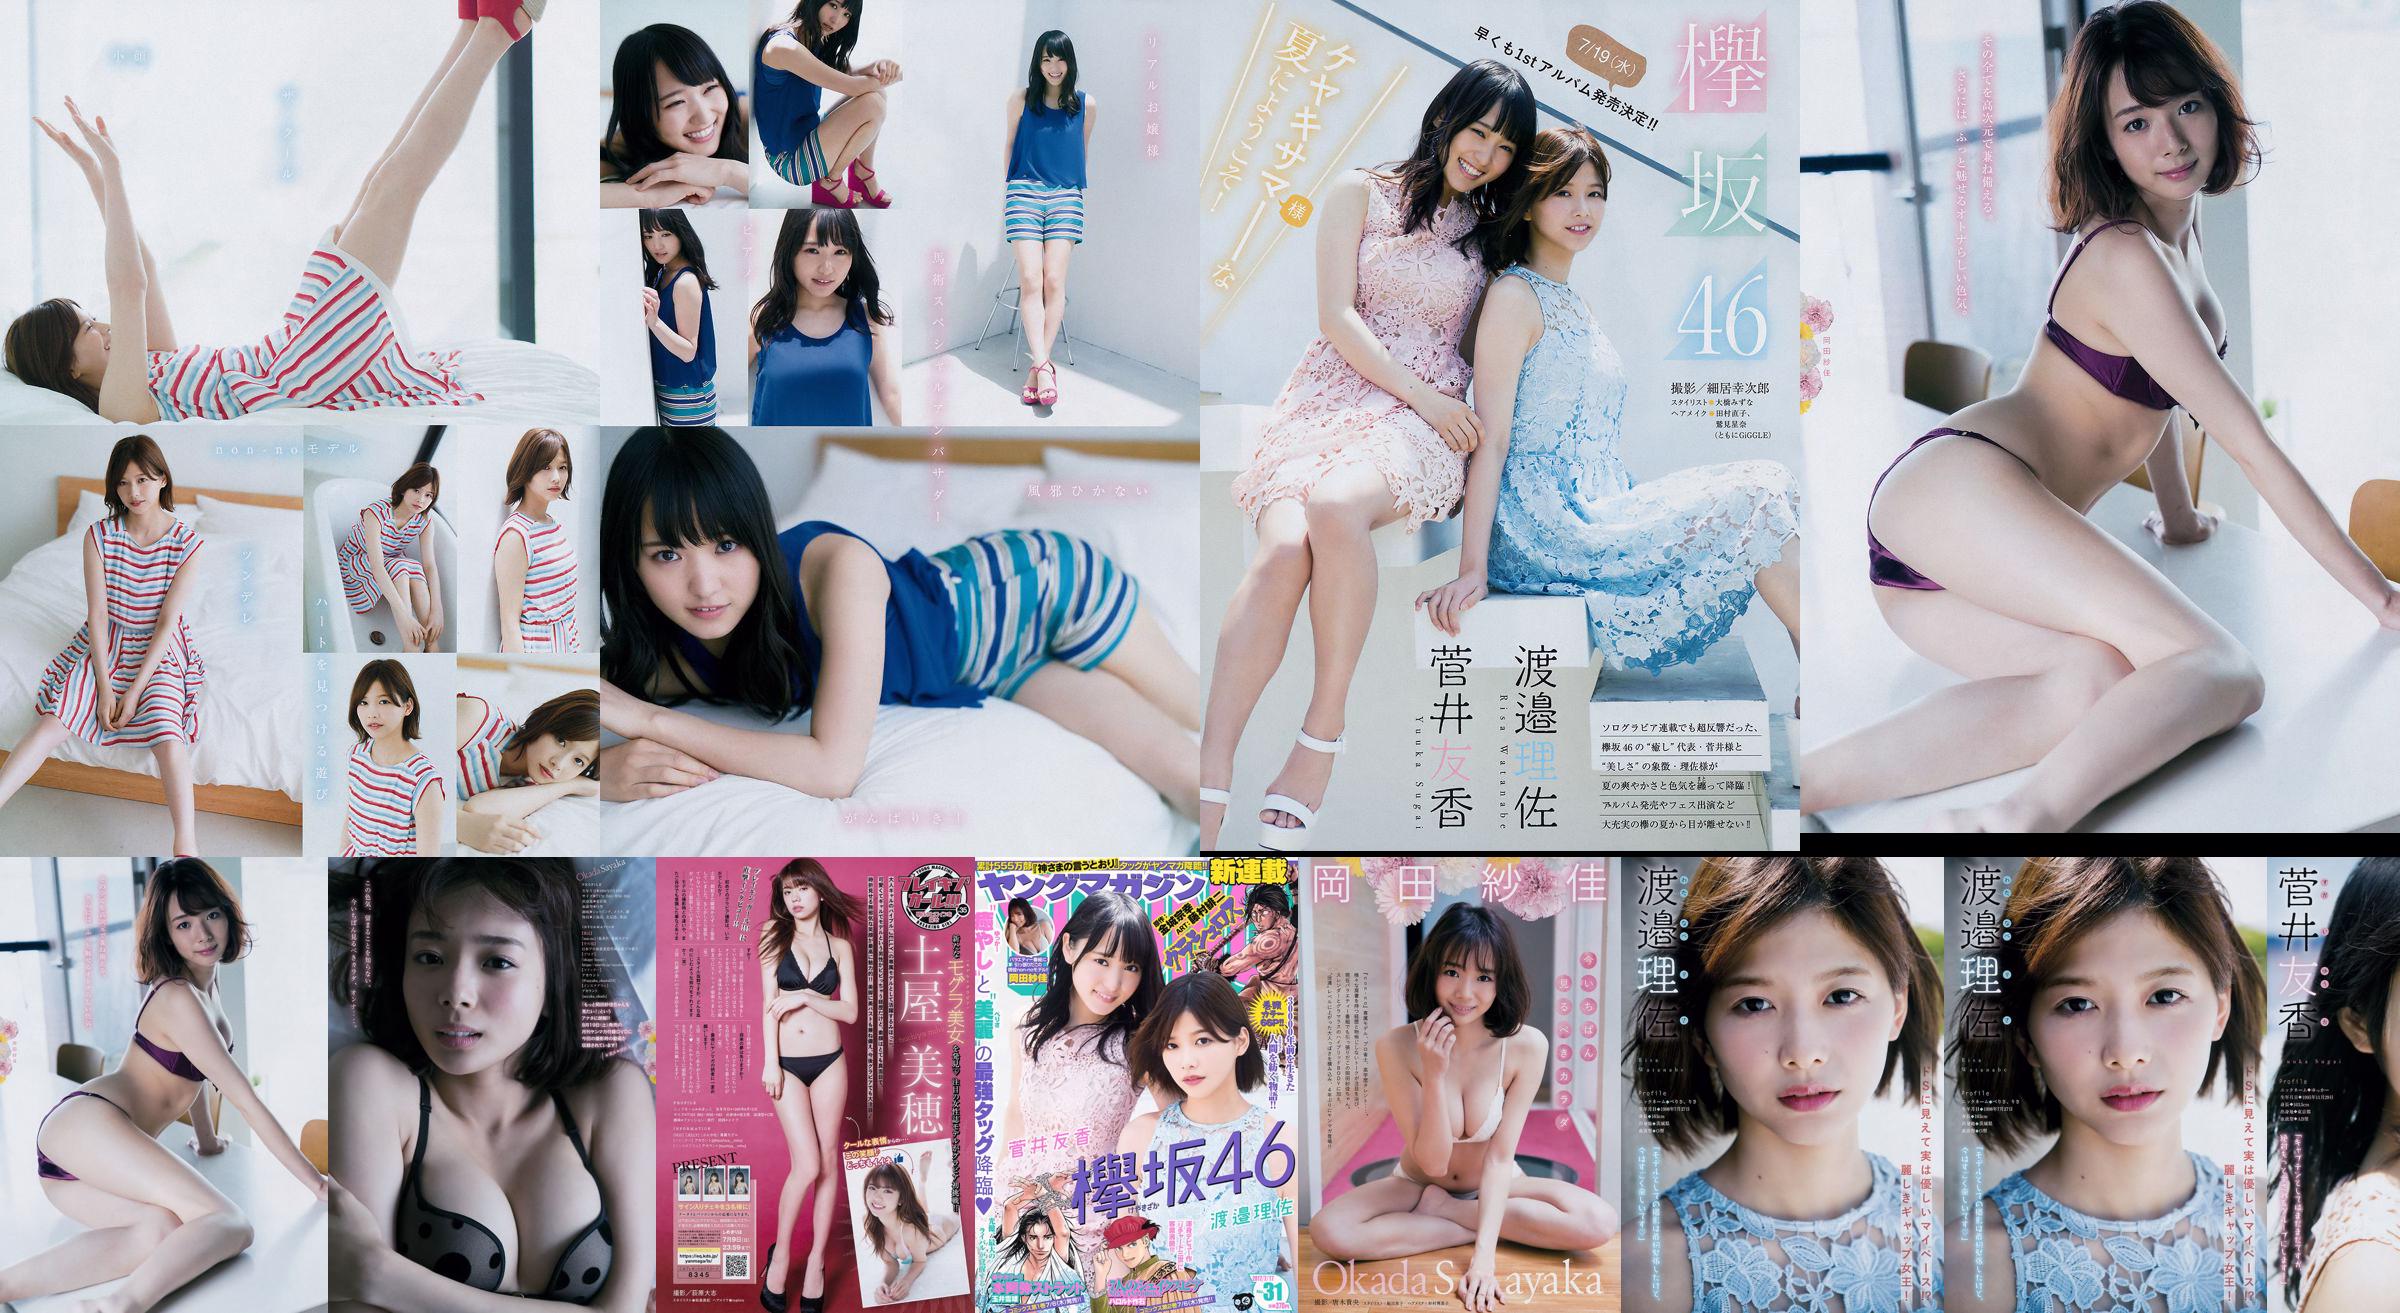 [Young Magazine] Watanabe Risa, Sugai Yuka, Okada Saika 2017 No.31 Photo Magazine No.2277f2 Page 6